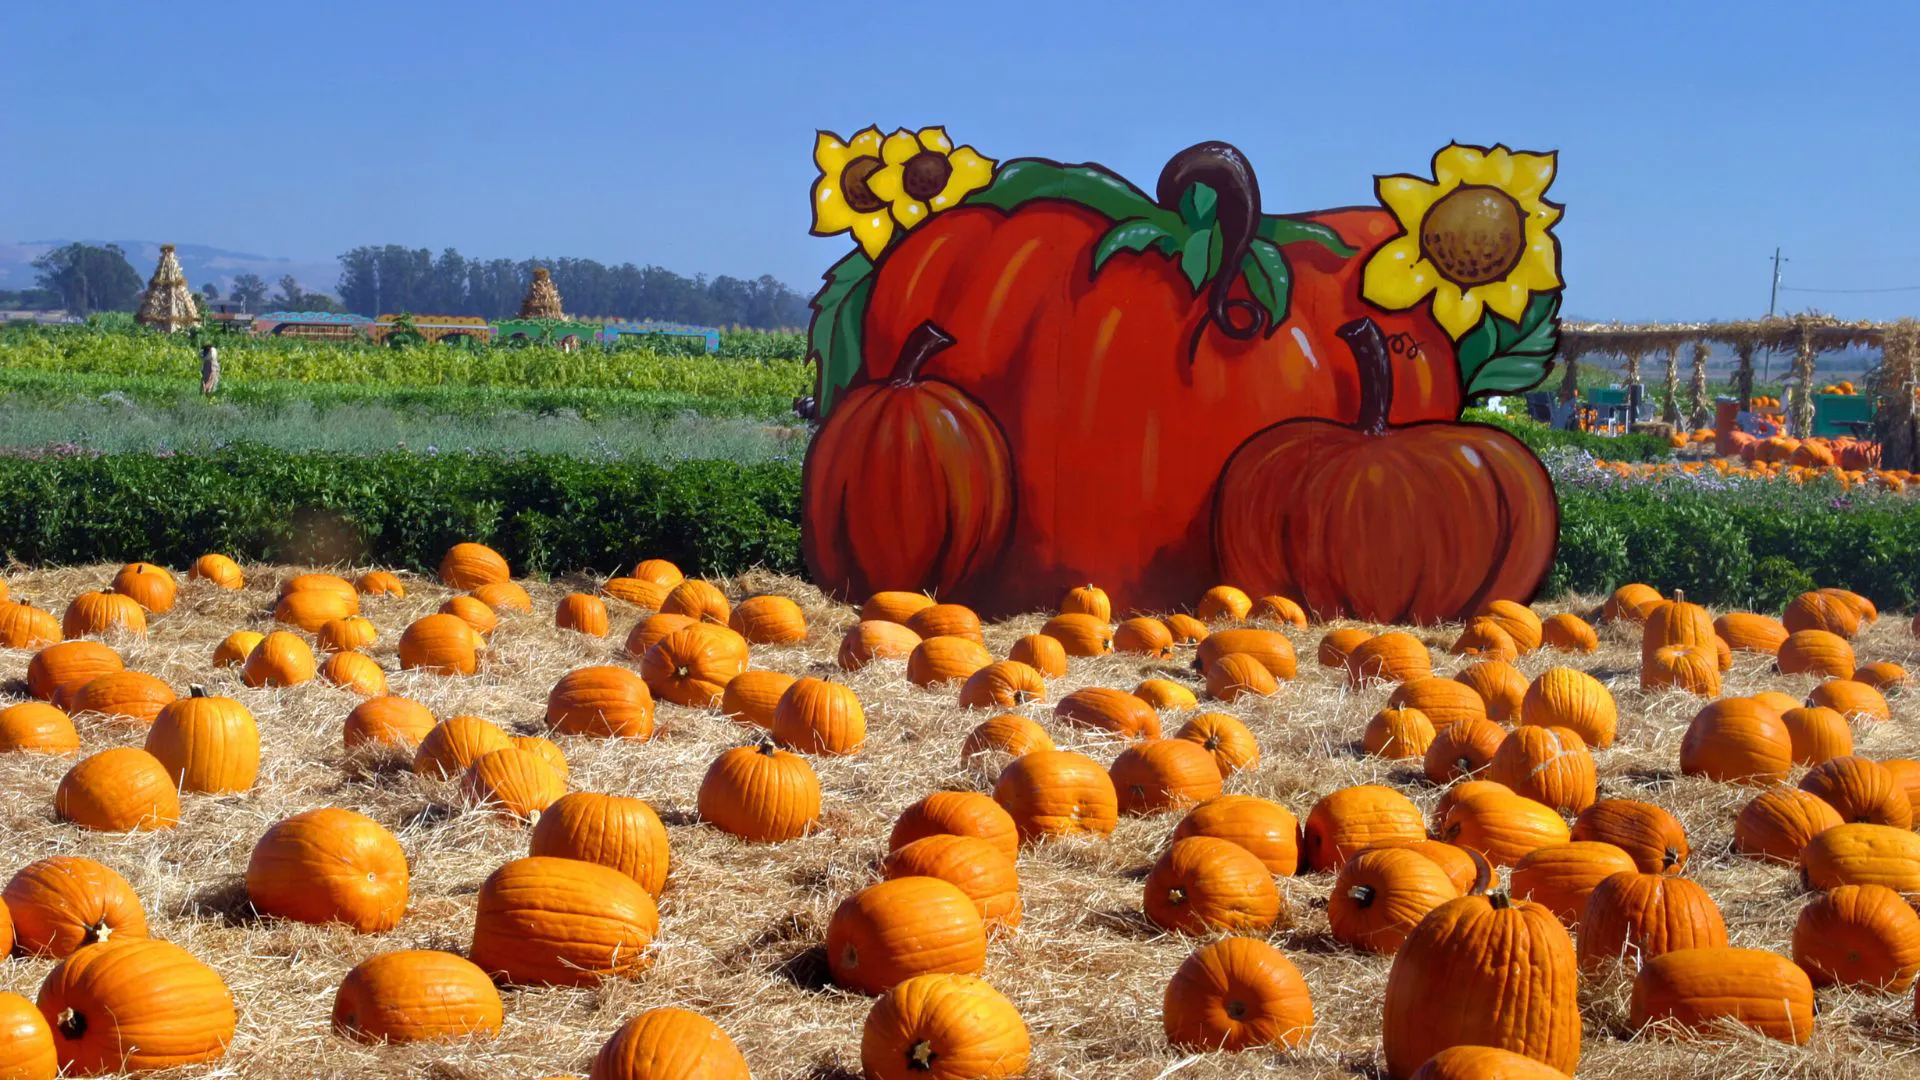 Pumpkin field with pumpkins and wooden pumpkin sign